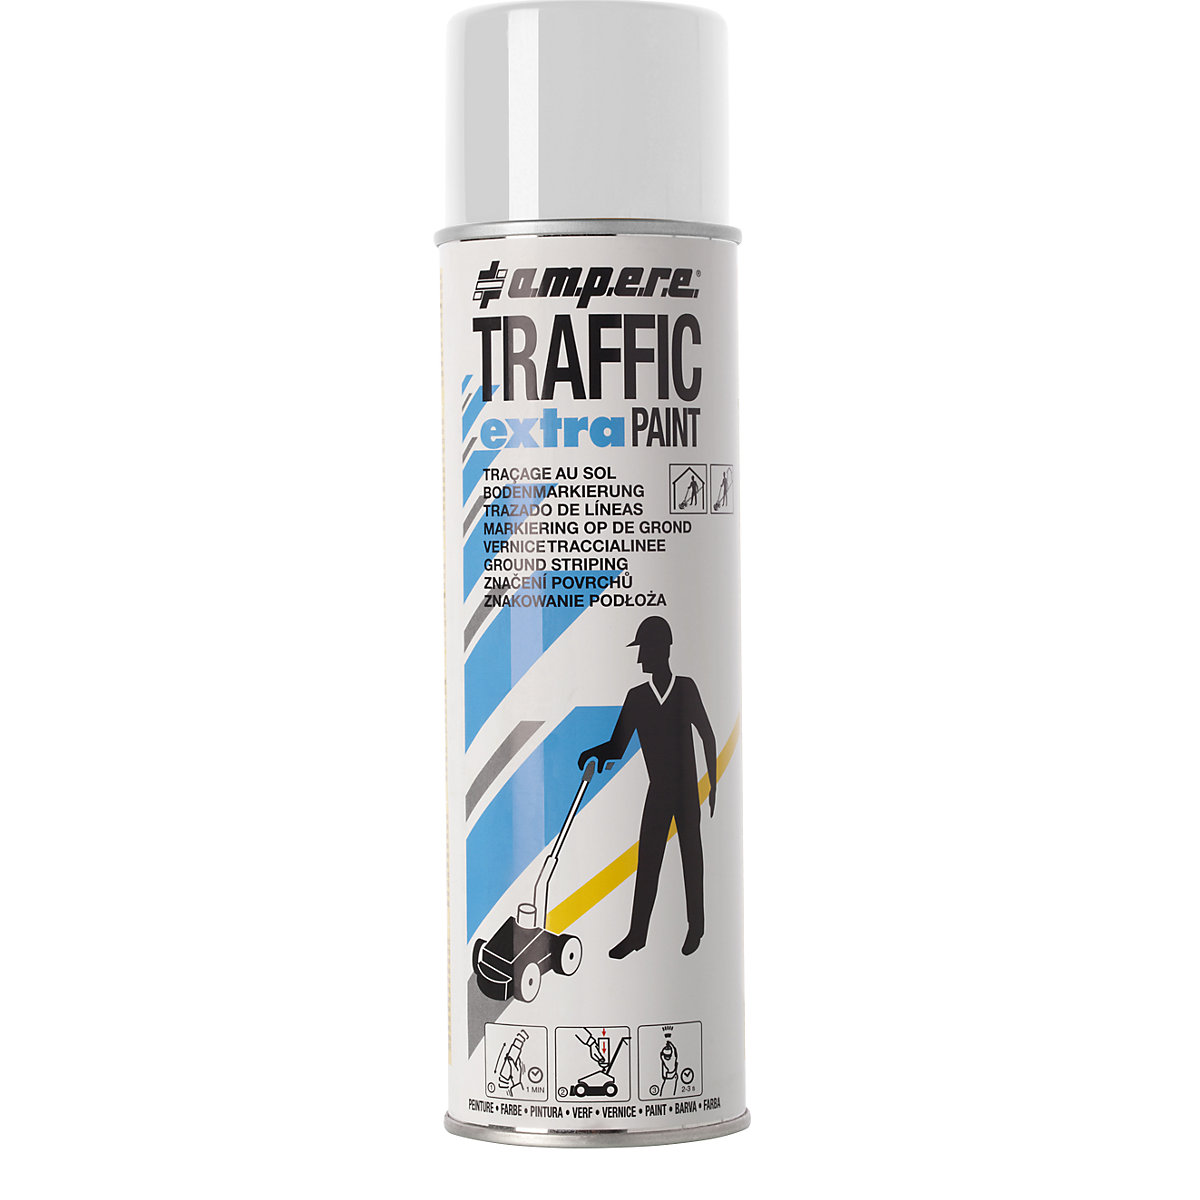 Pintura de marcaje Traffic extra Paint® para solicitaciones altas – Ampere, contenido 500 ml, UE 12 botes, blanco-2